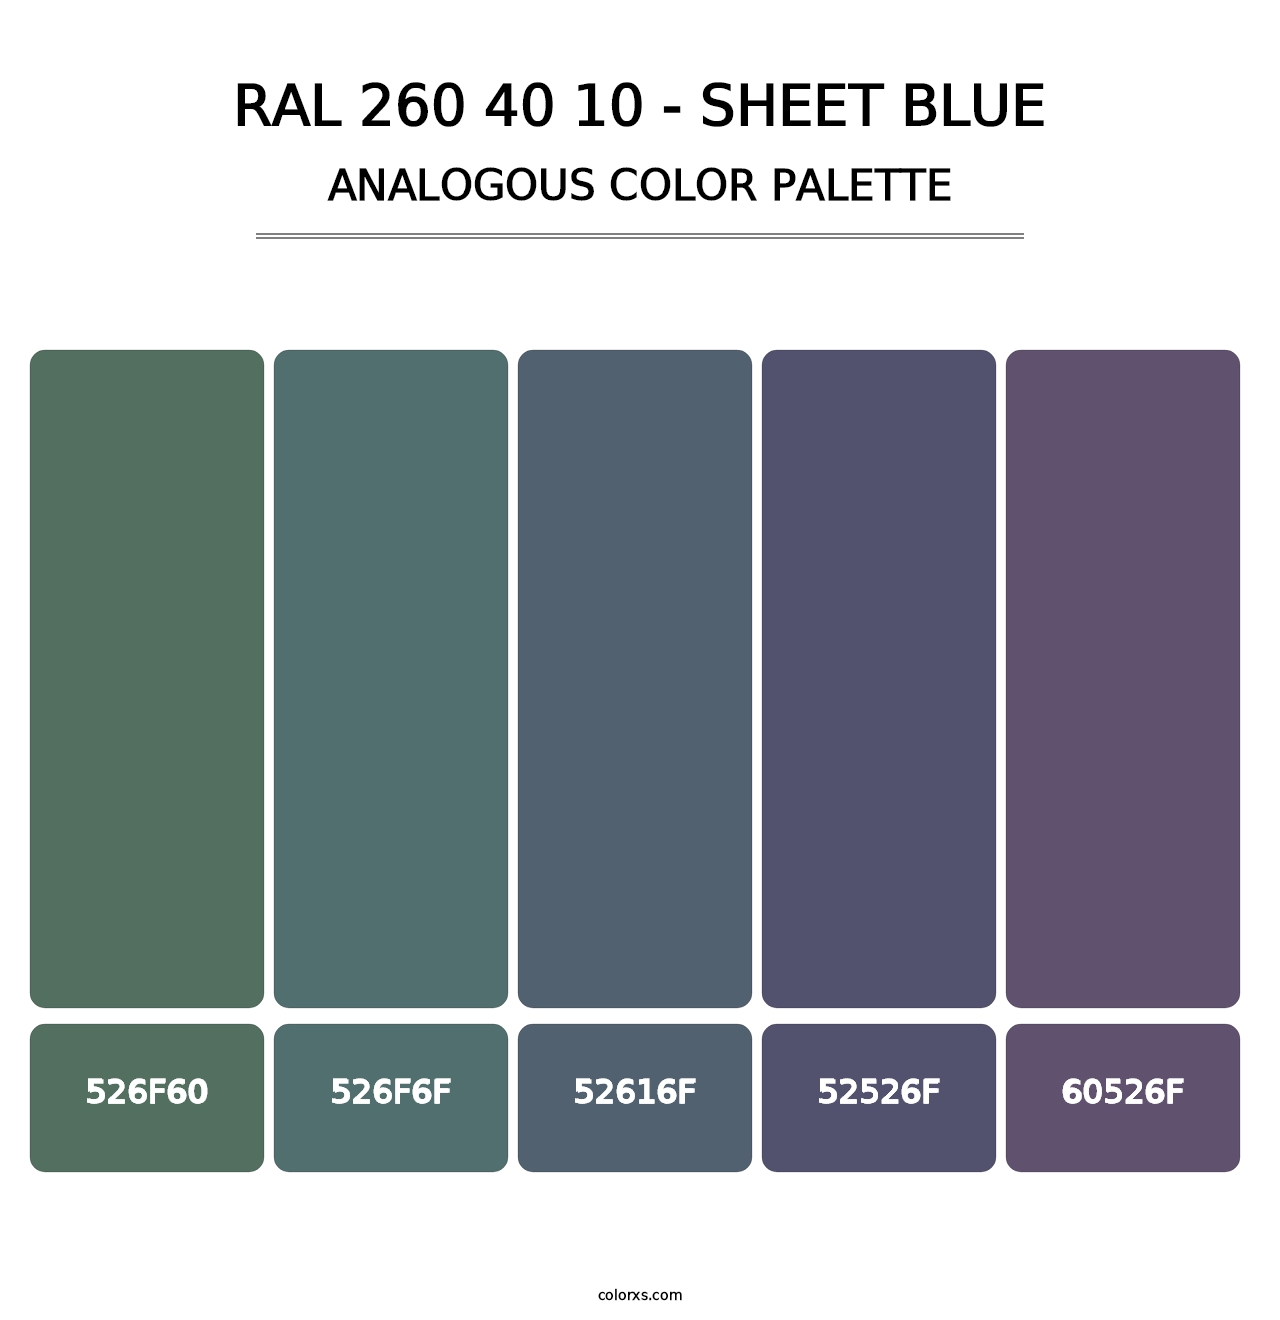 RAL 260 40 10 - Sheet Blue - Analogous Color Palette